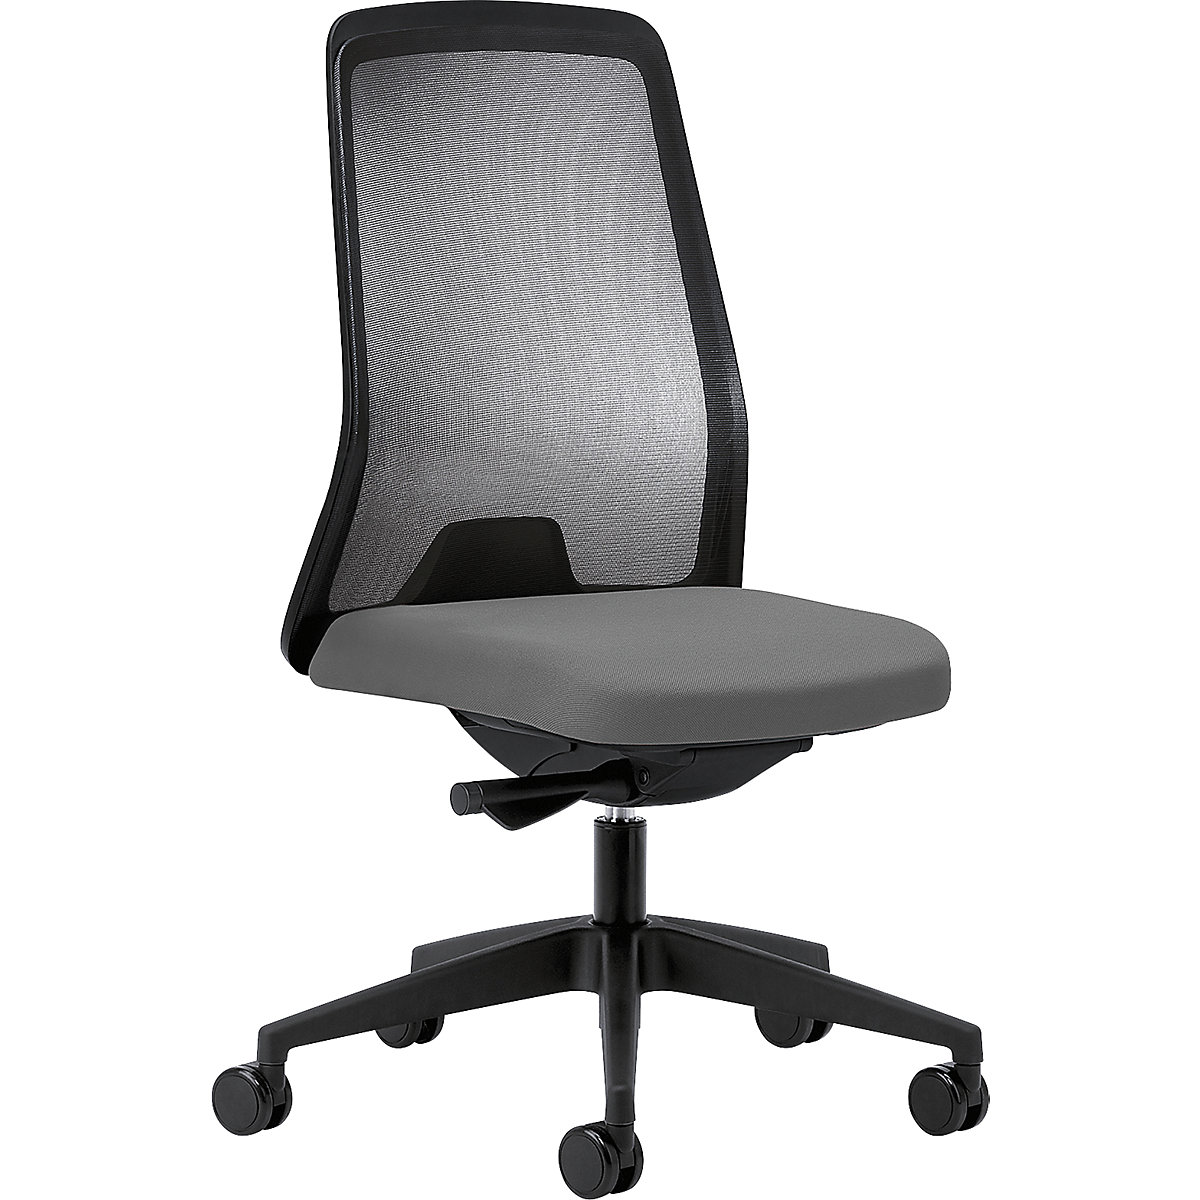 Udobna okretna stolica EVERY, mrežasti naslon za leđa u crnoj boji – interstuhl